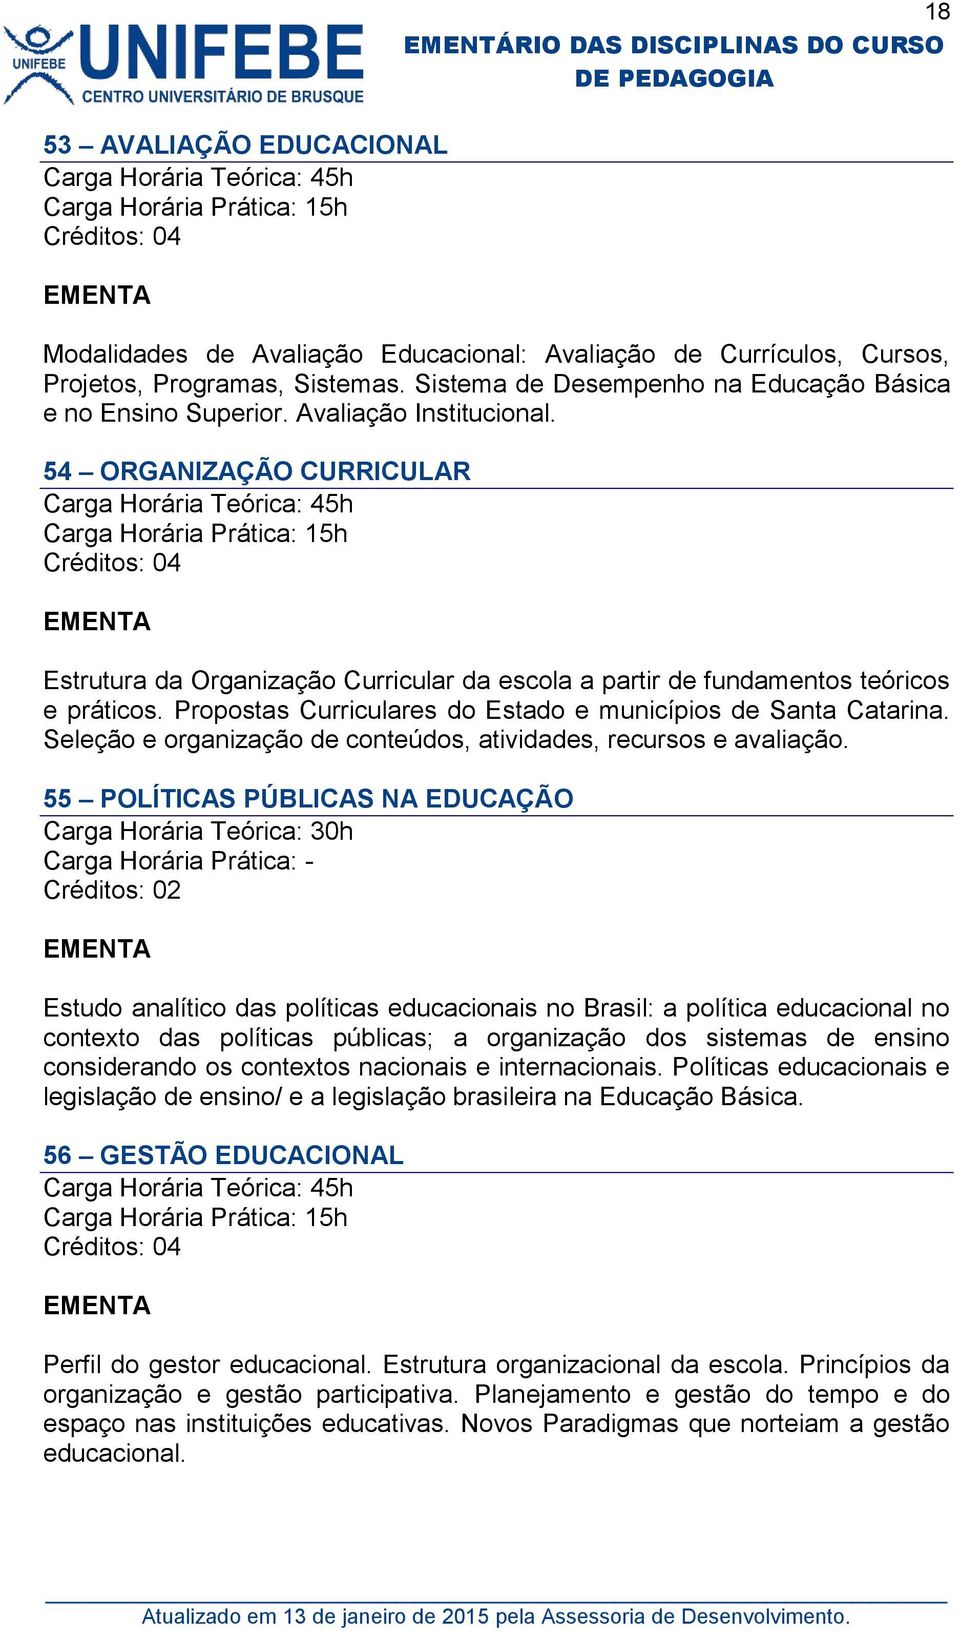 Propostas Curriculares do Estado e municípios de Santa Catarina. Seleção e organização de conteúdos, atividades, recursos e avaliação.